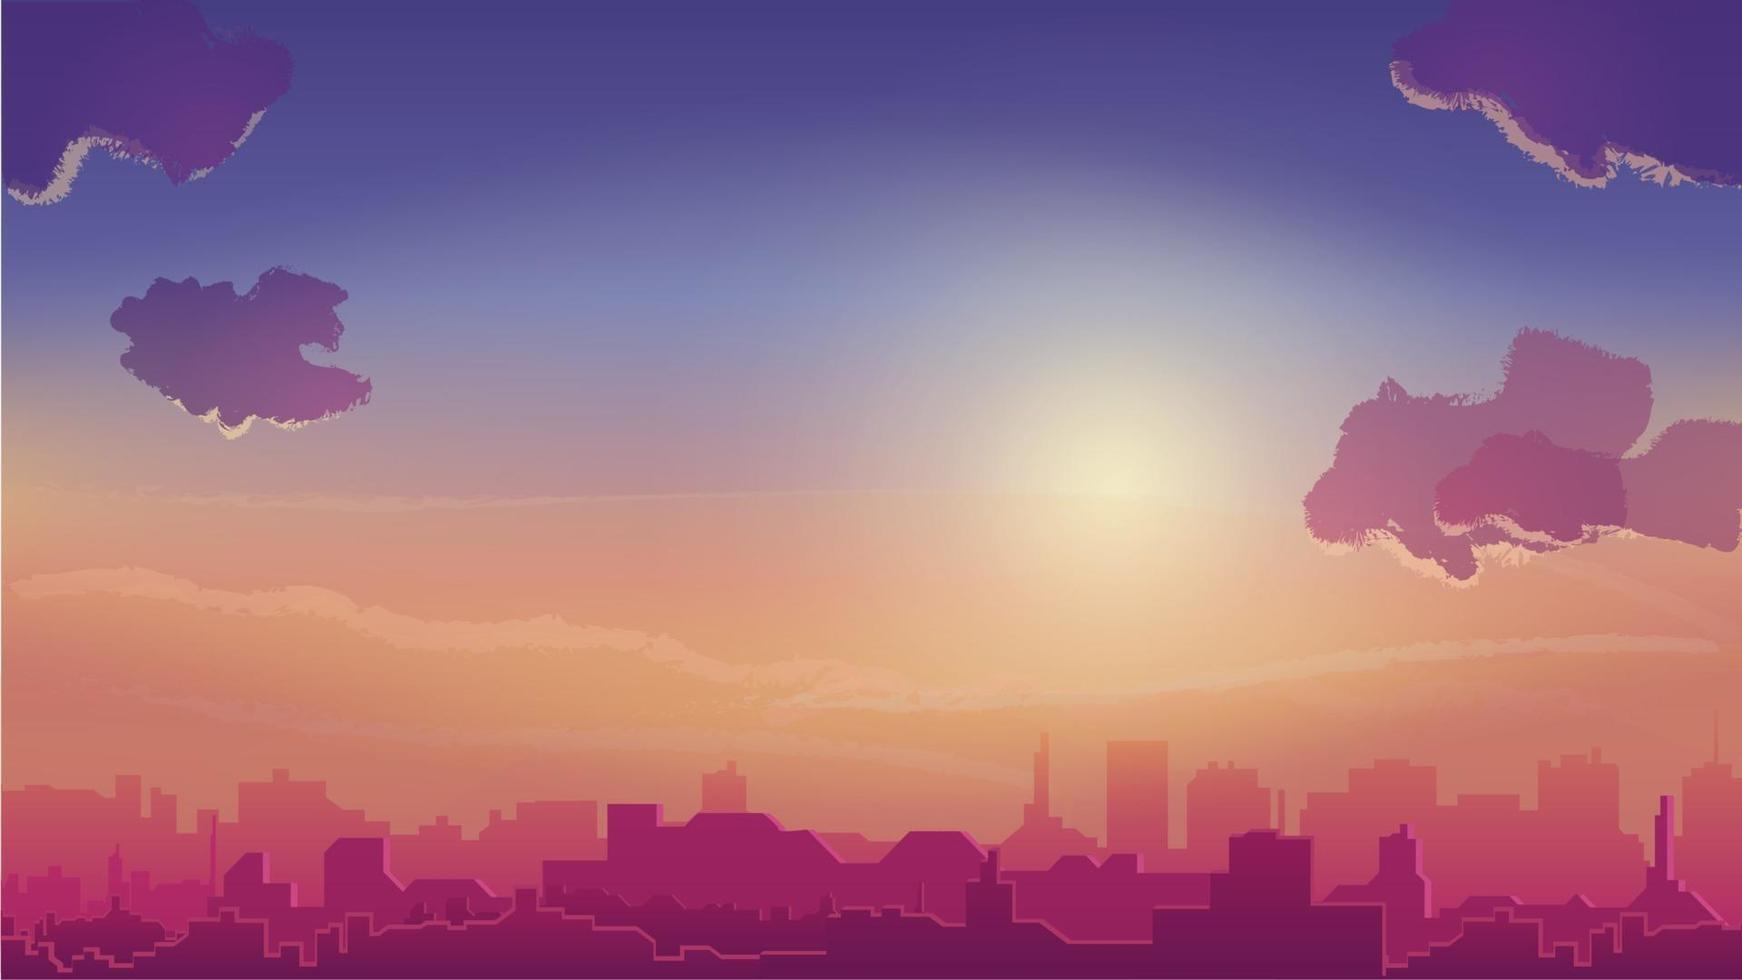 tramonto arancione e città all'orizzonte, paesaggio urbano in stile cartone animato vettore